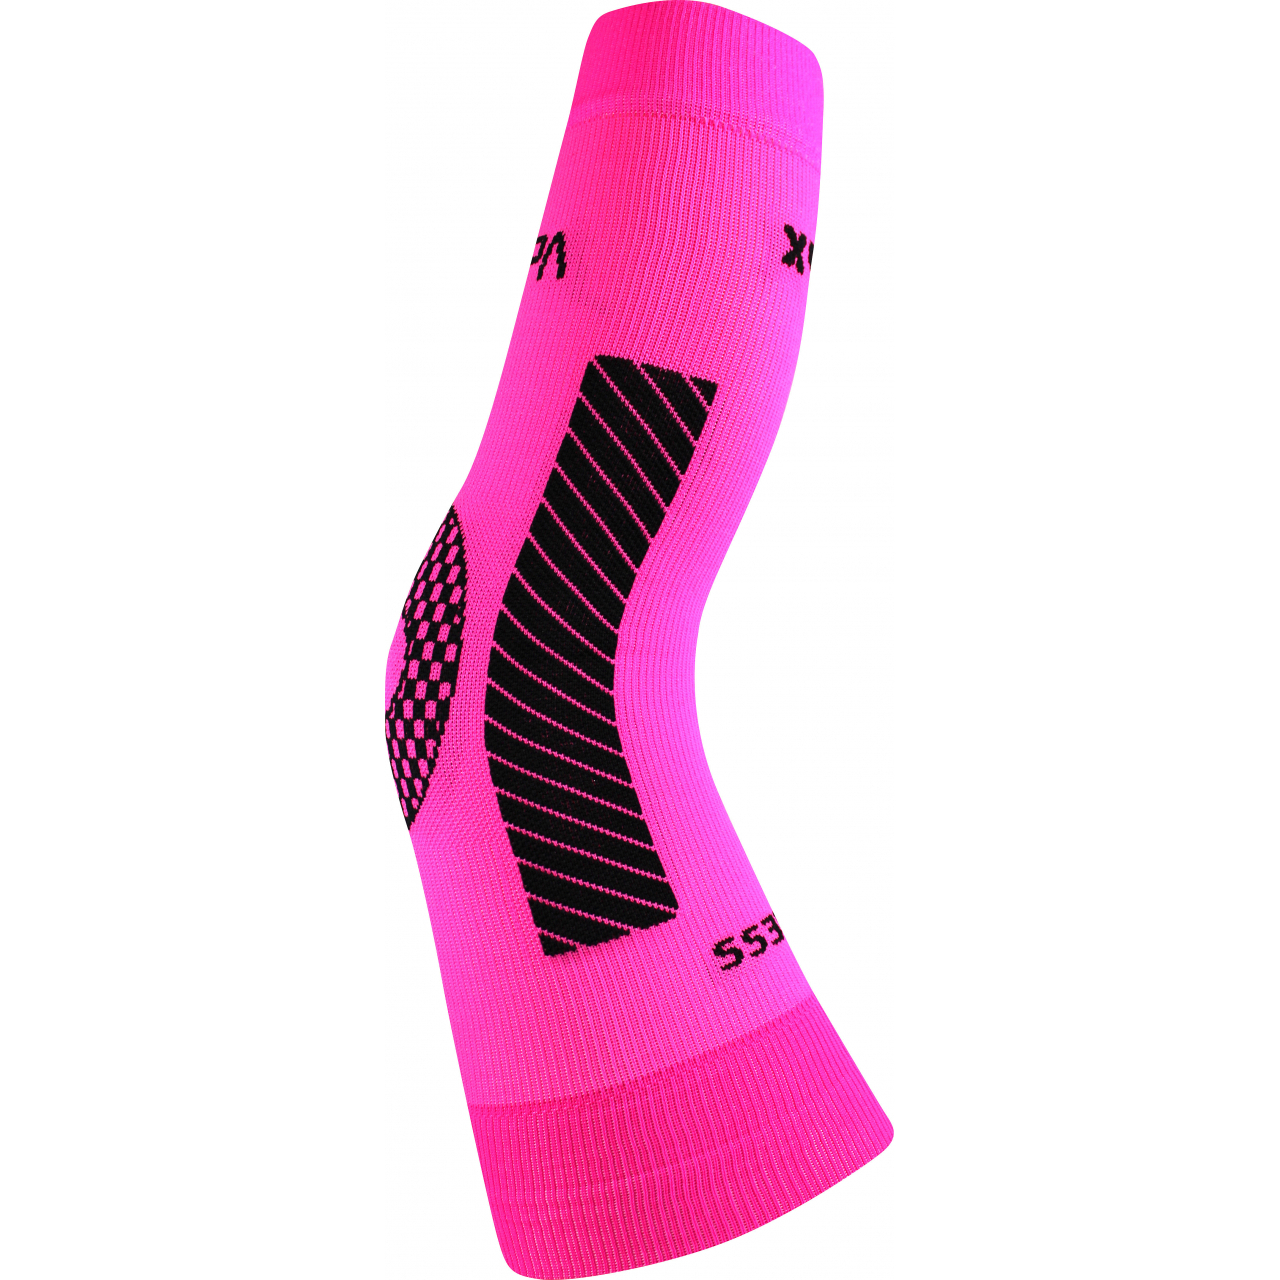 Návlek kompresní Voxx Protect koleno - růžový svítící, L/XL